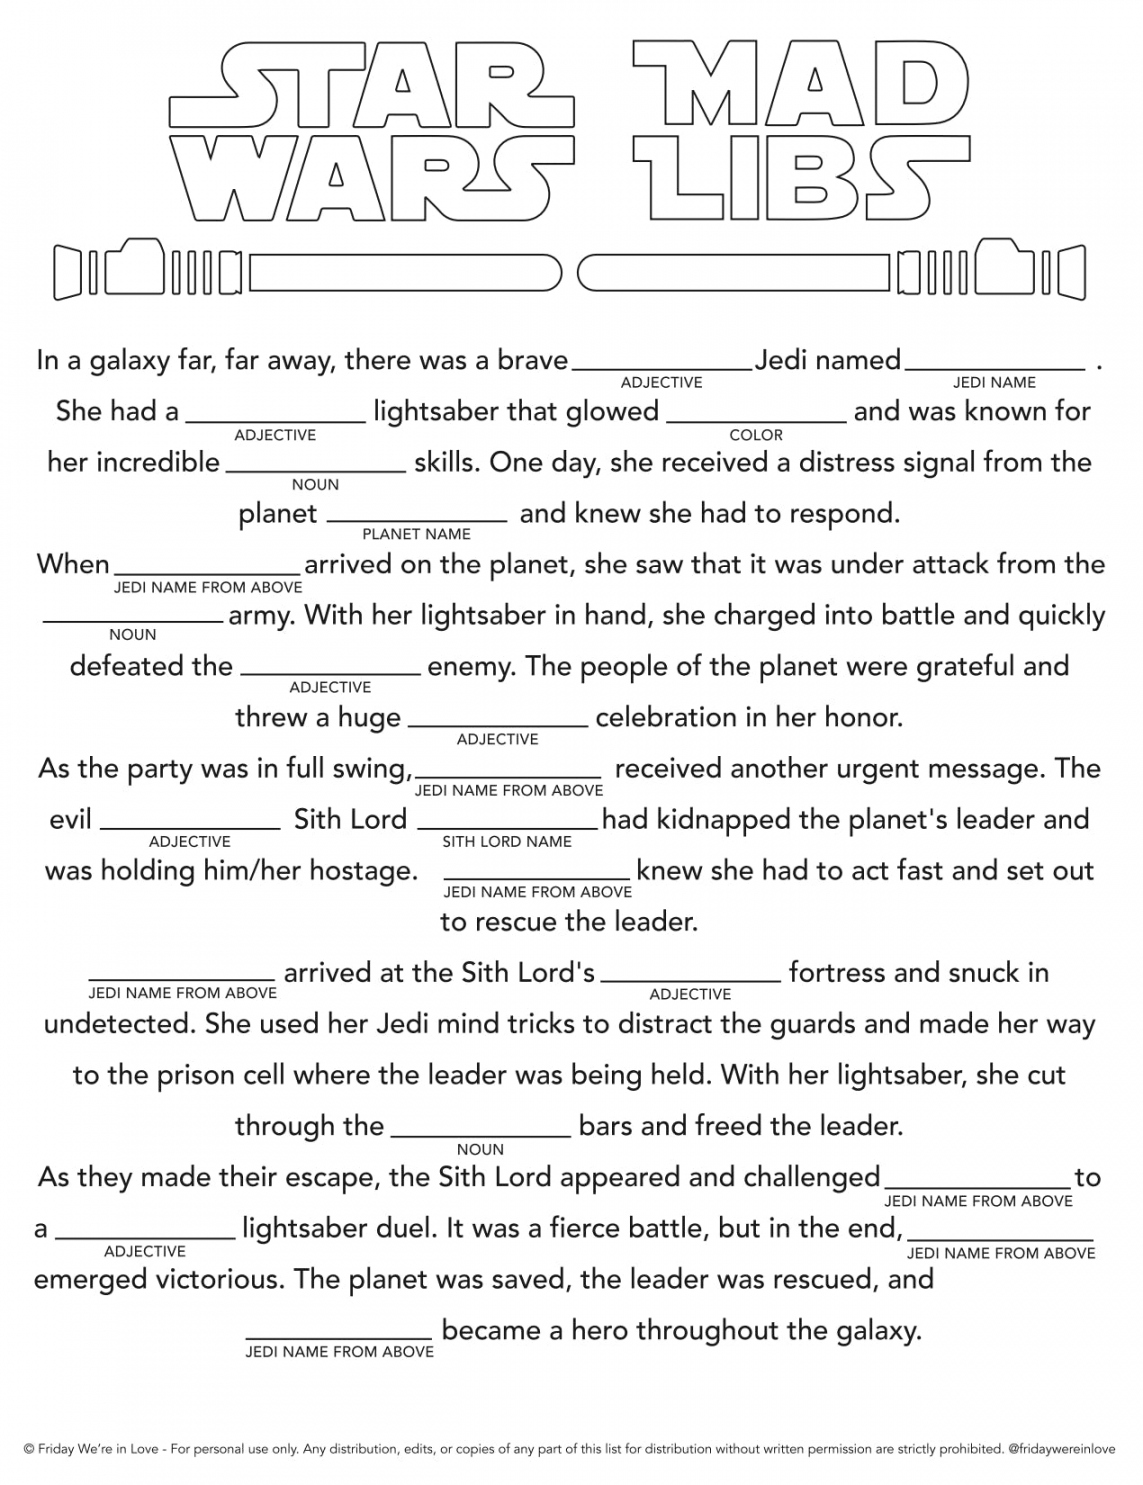 Printable Mad Libs Free - Printable - Star Wars Mad Libs Printable - Friday We